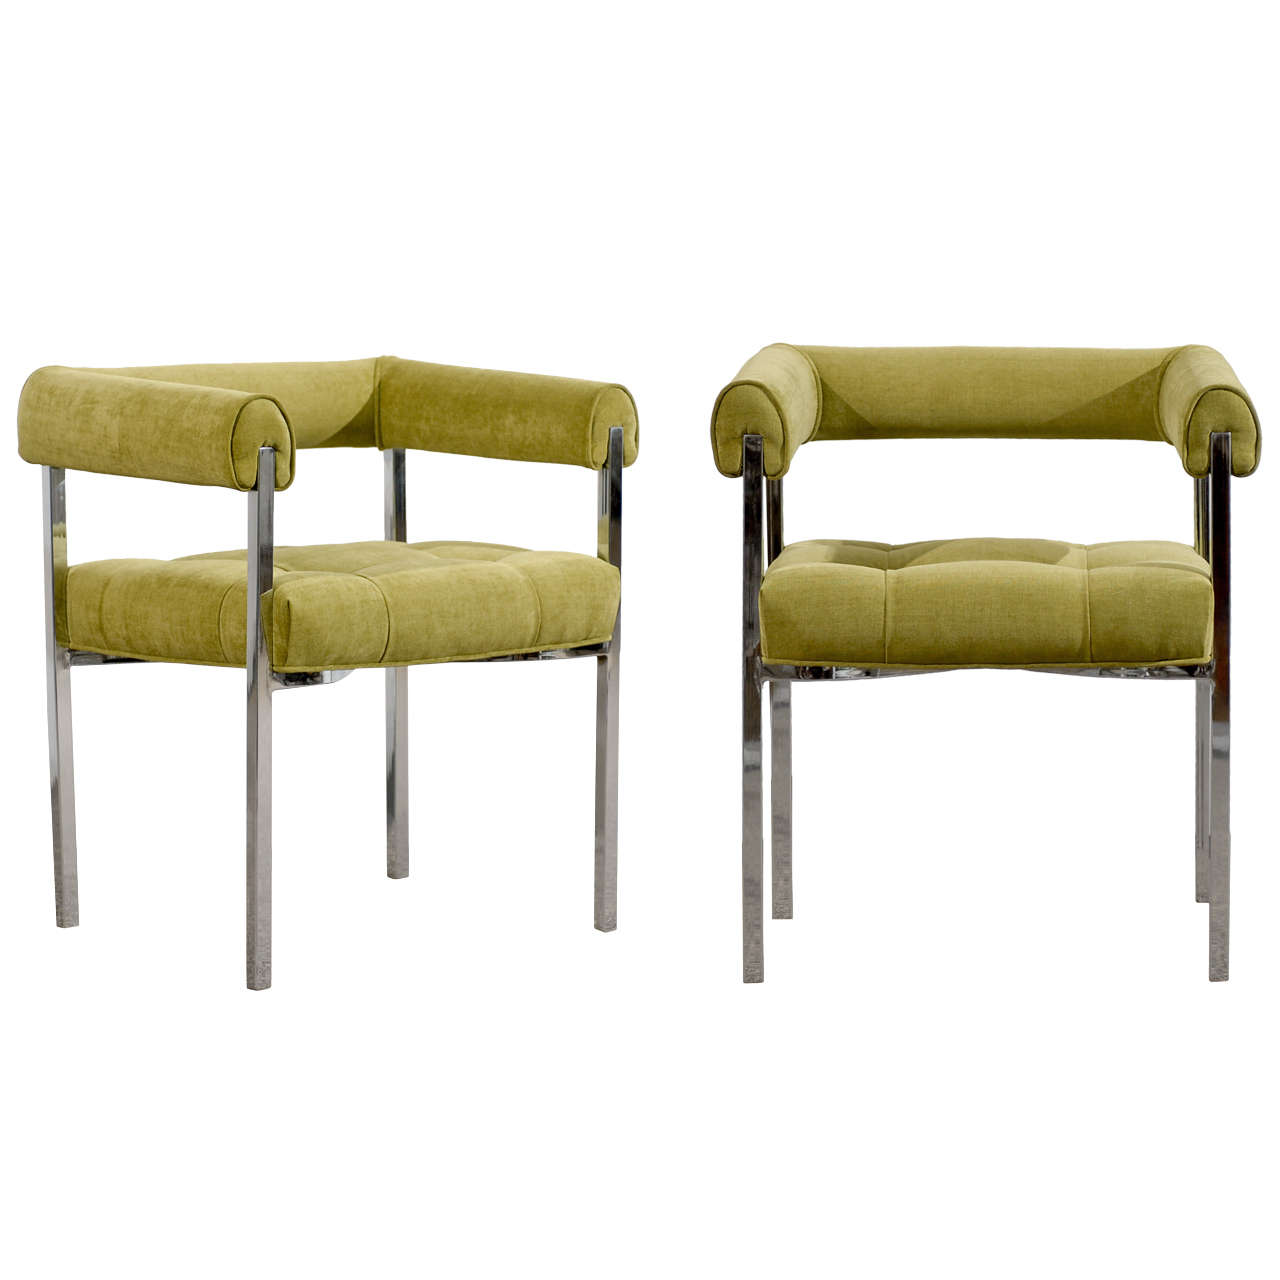 Magnifiques fauteuils chromés de style Milo Baughman en chenille calcaire